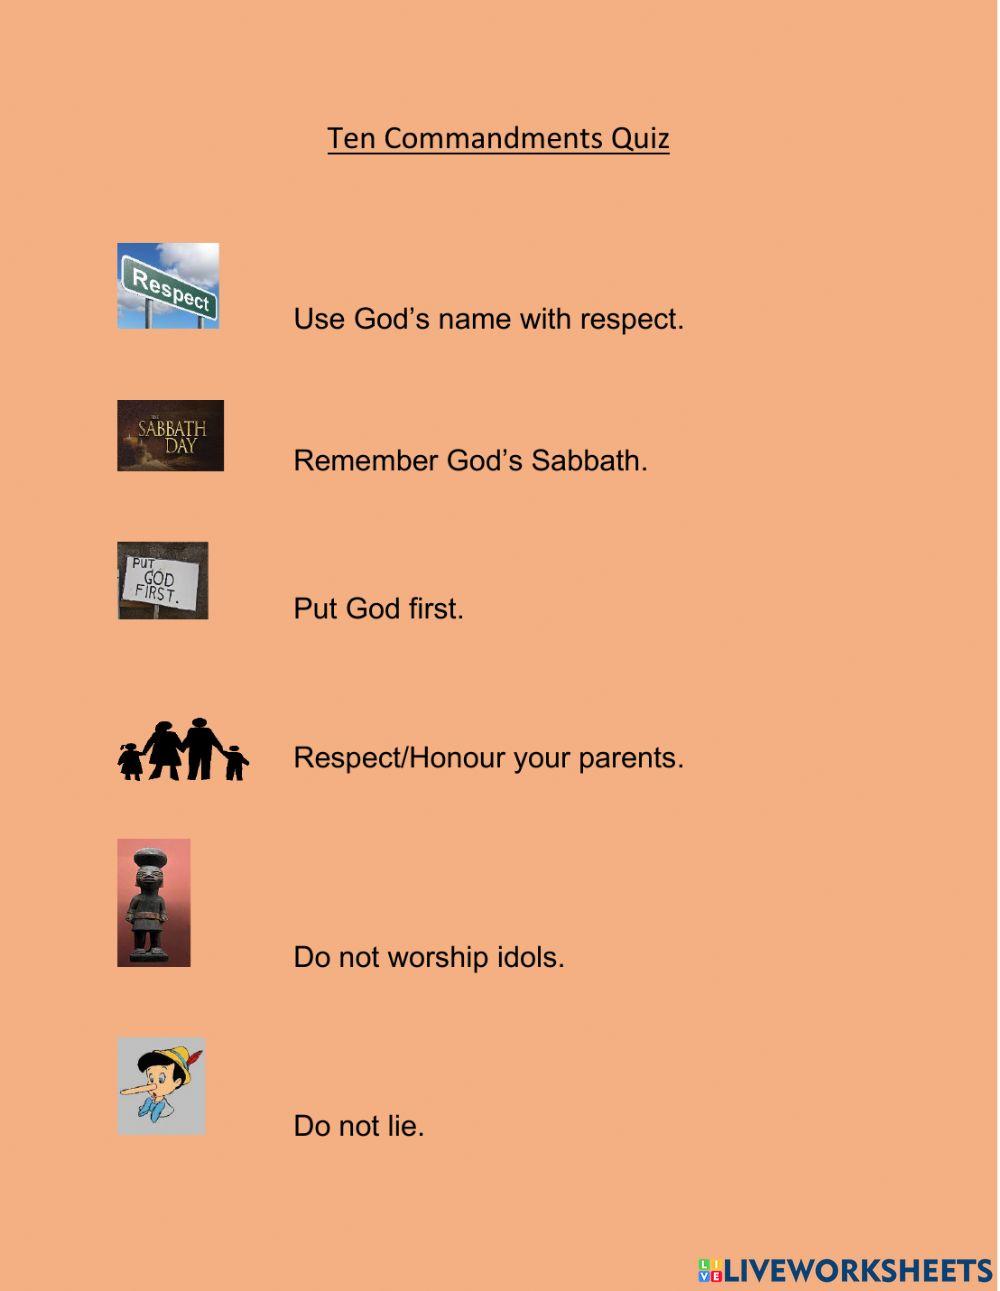 Ten Commandments (Order)